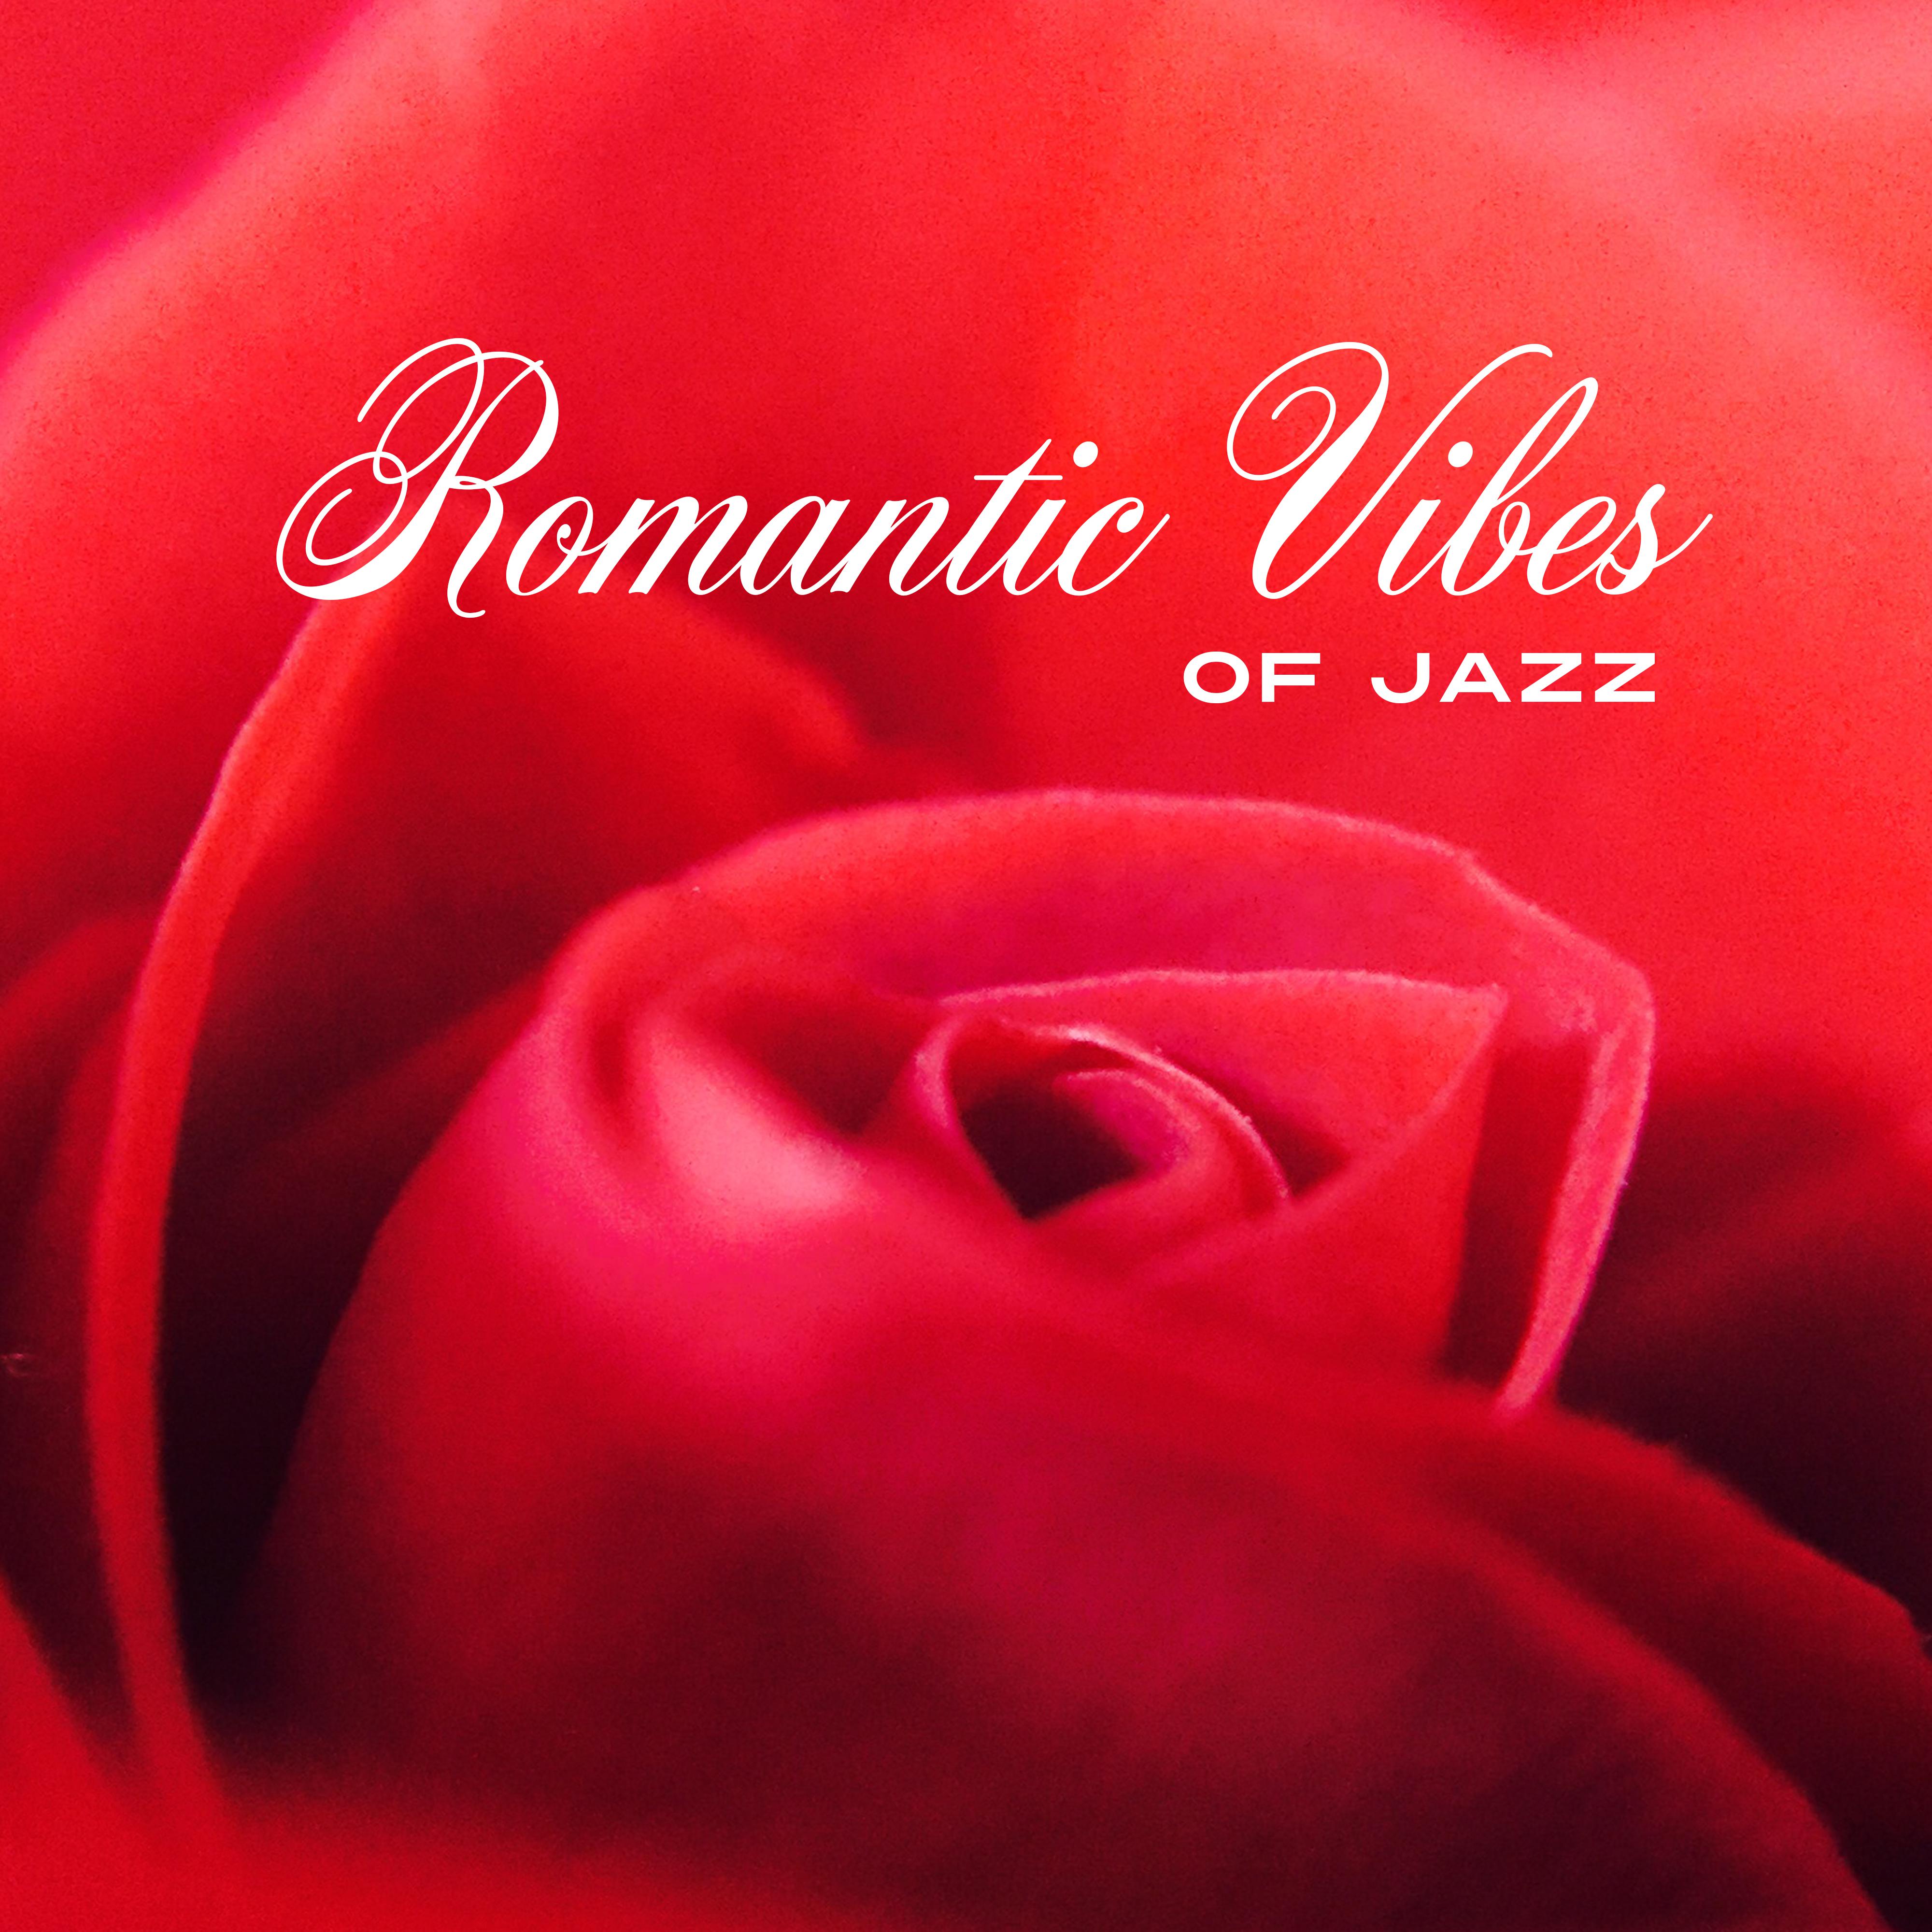 Romantic Vibes of Jazz